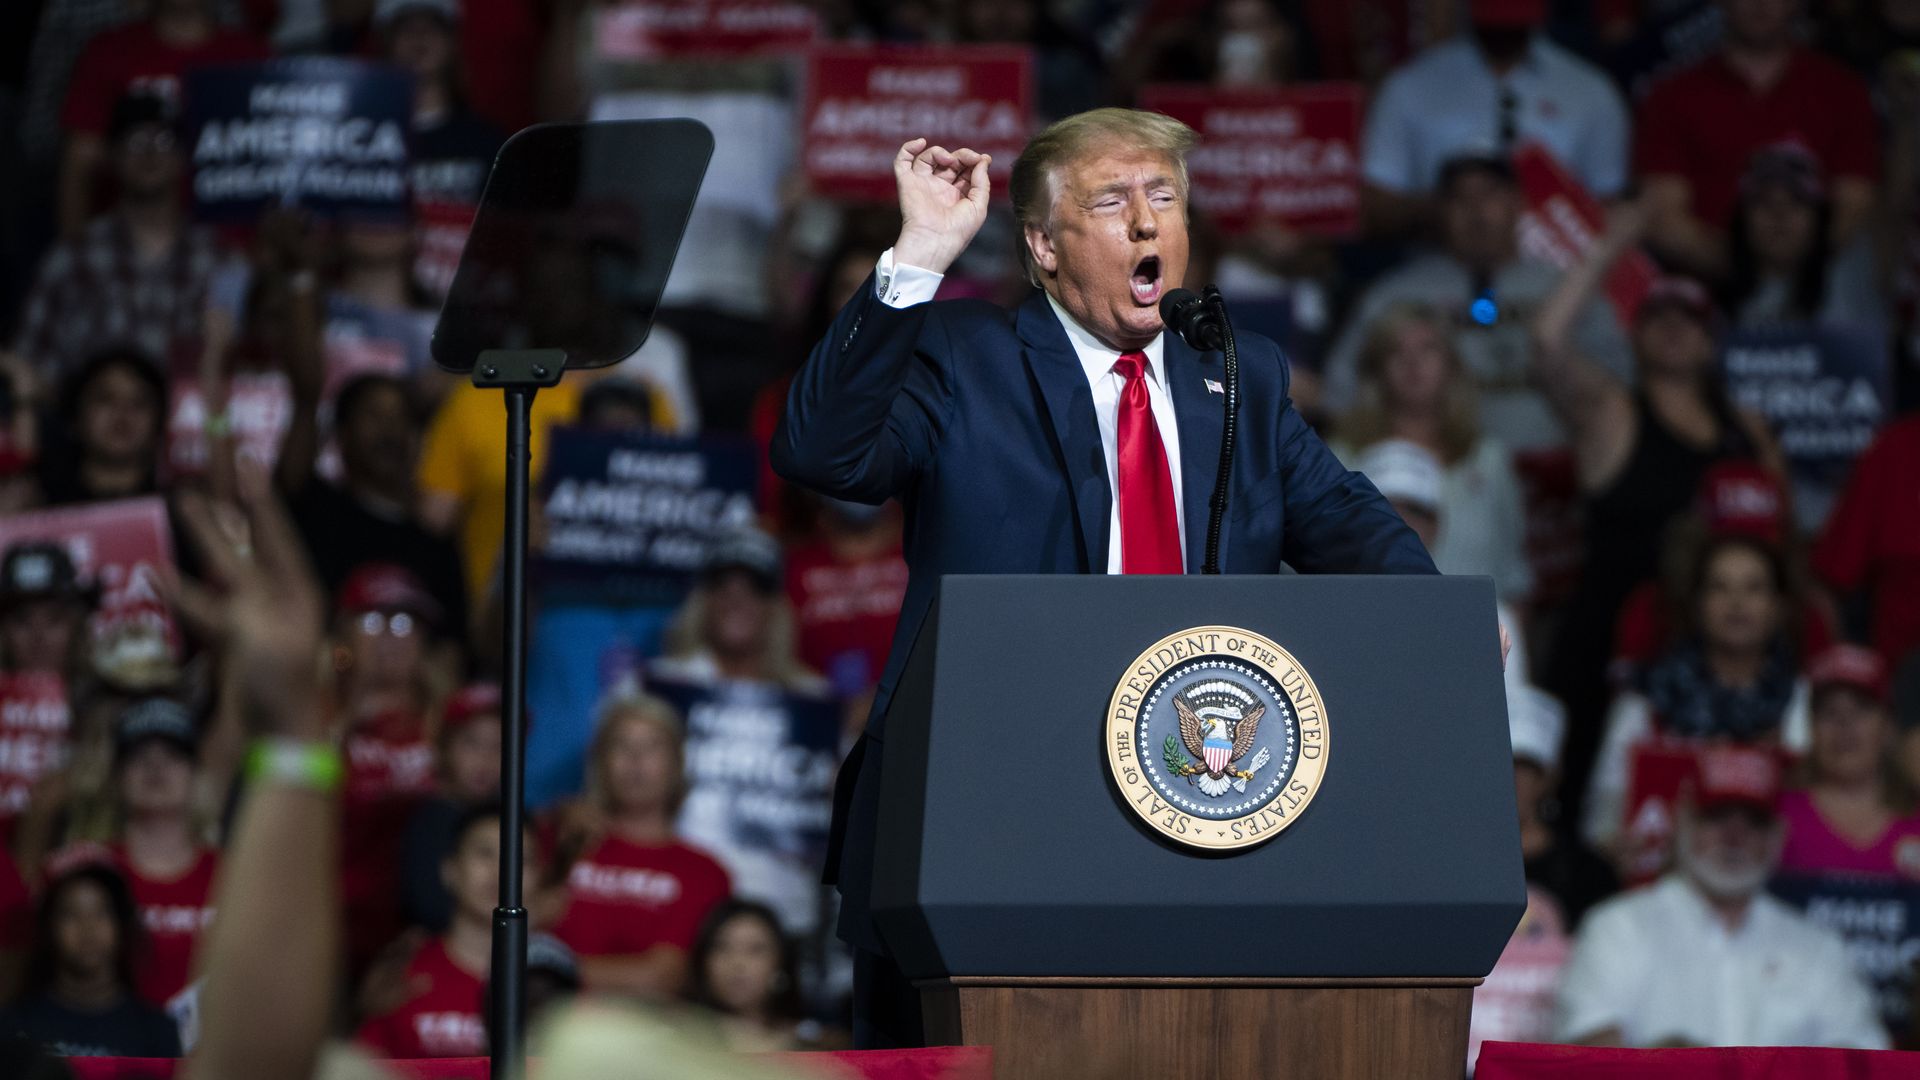 Trump at the podium of a MAGA rally